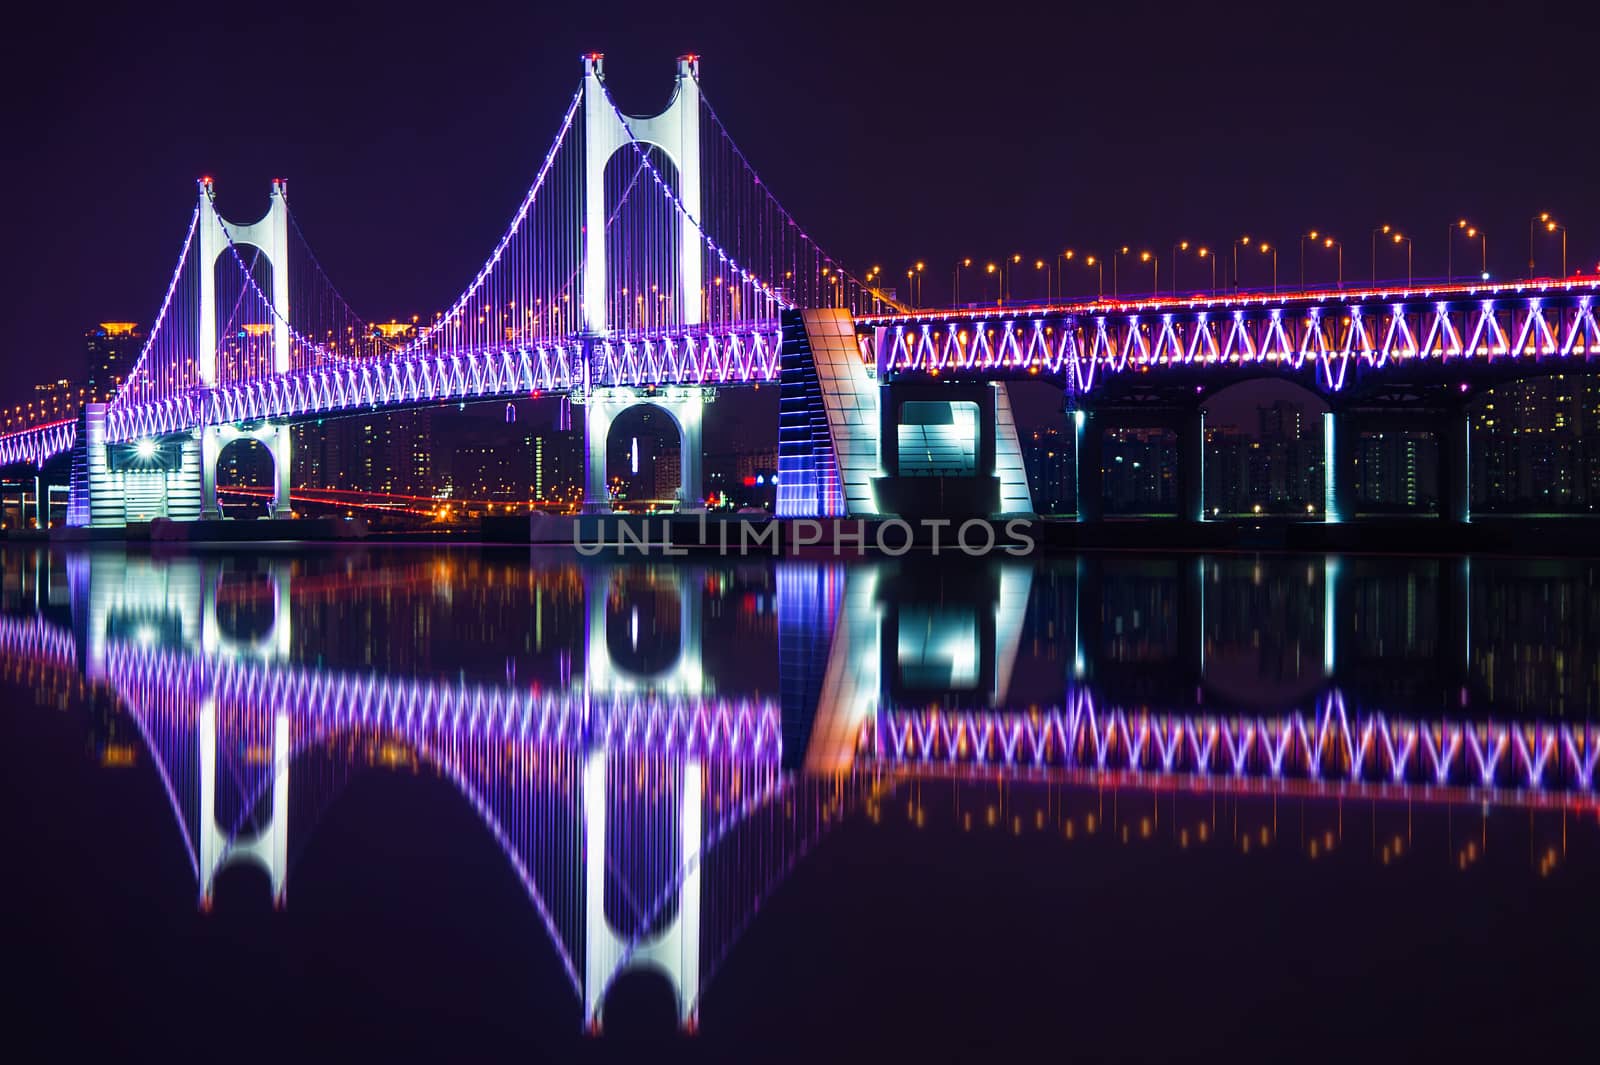 GwangAn Bridge and Haeundae at night in Busan,Korea